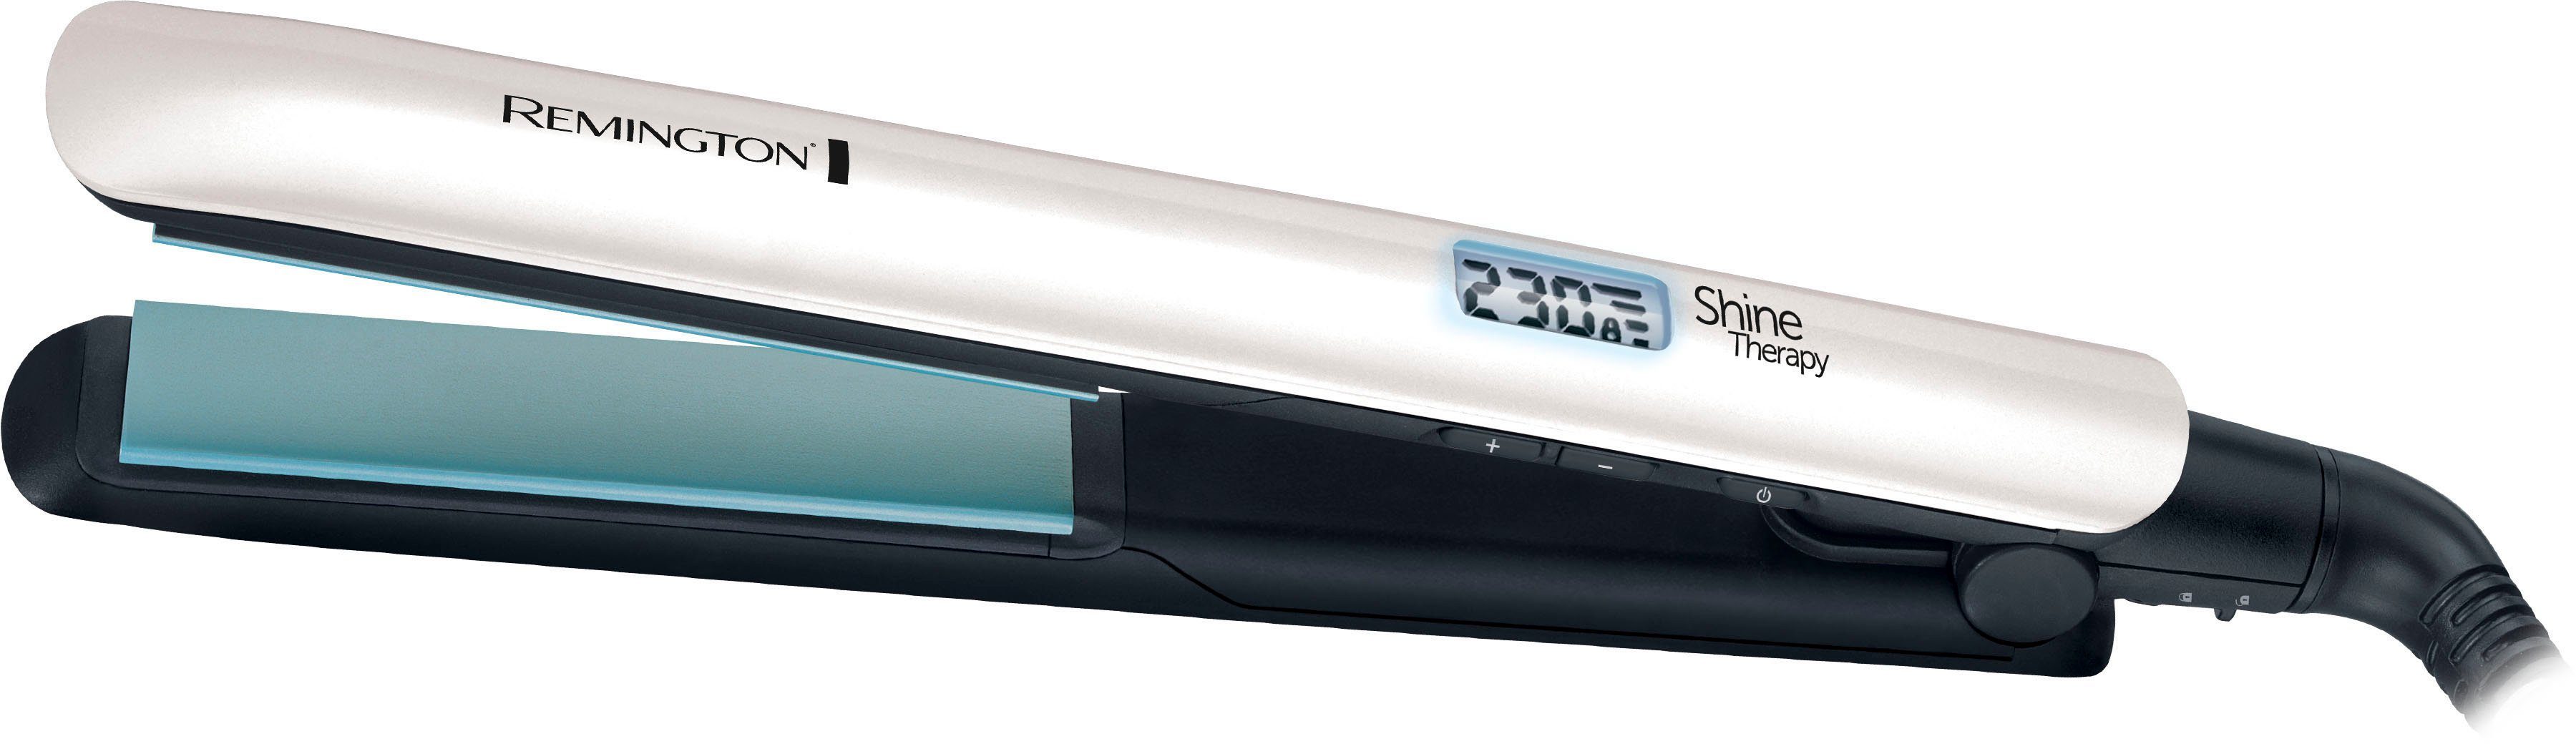 Remington Haartrockner Shine mit Therapy S8500GP aus bestehend Haarglätter W, Geschenk-Set, Haartrockner 2300 und Keramikbeschichtung